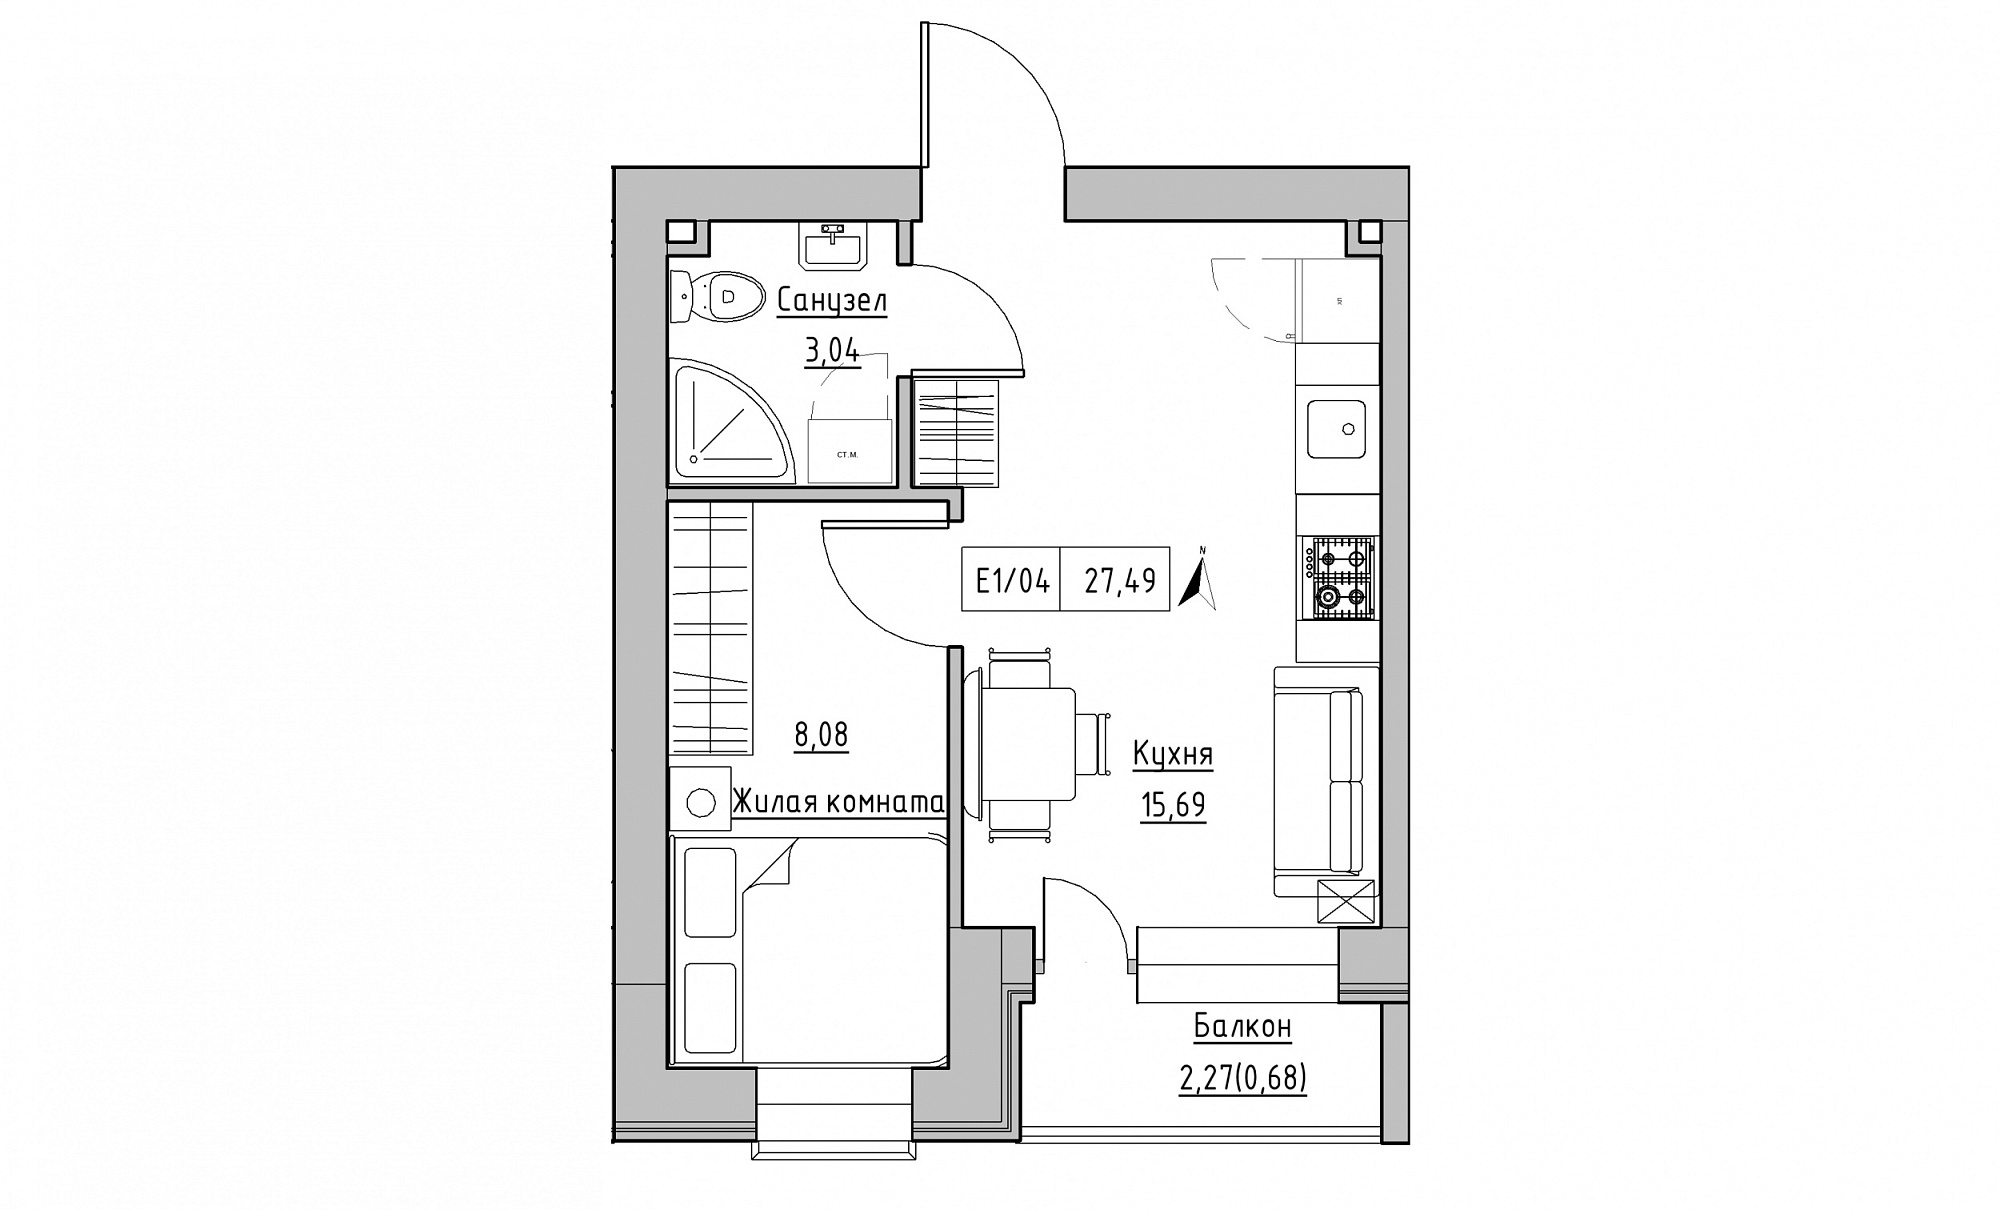 Планування 1-к квартира площею 27.49м2, KS-015-05/0012.